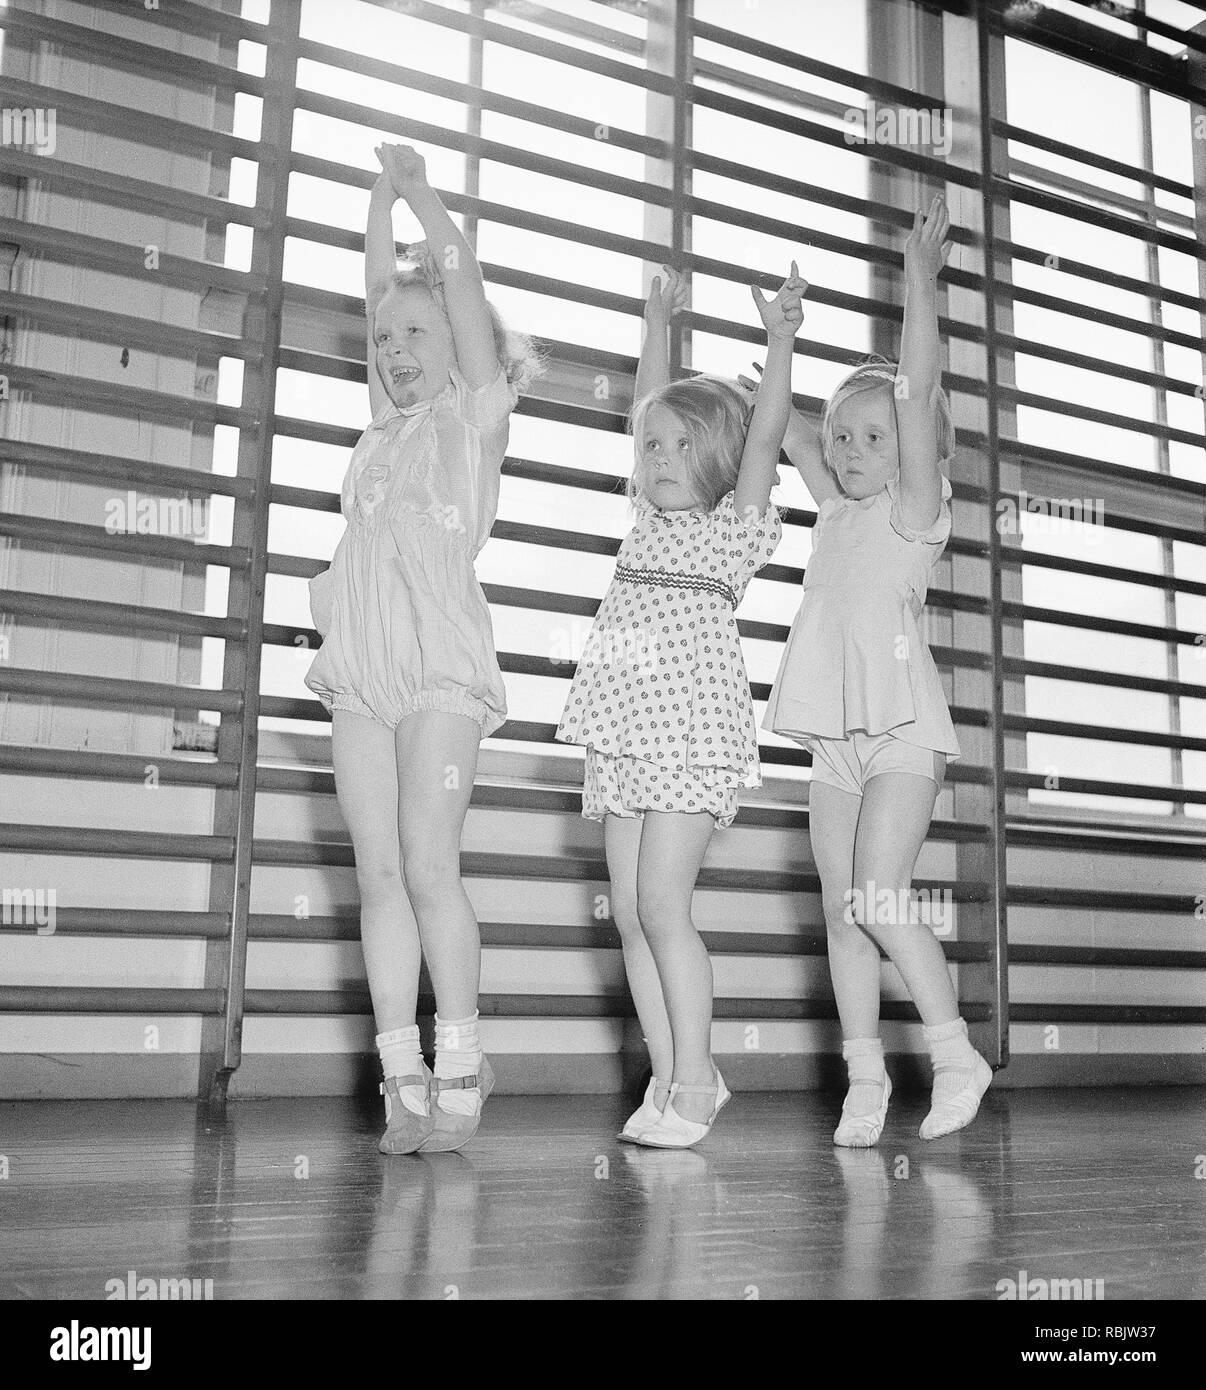 La gymnastique dans les années 40. Trois enfants à différents âges dans un gymnase ont un cours de danse. Kristoffersson Photo Ref AC3-3. Suède 1940 Banque D'Images